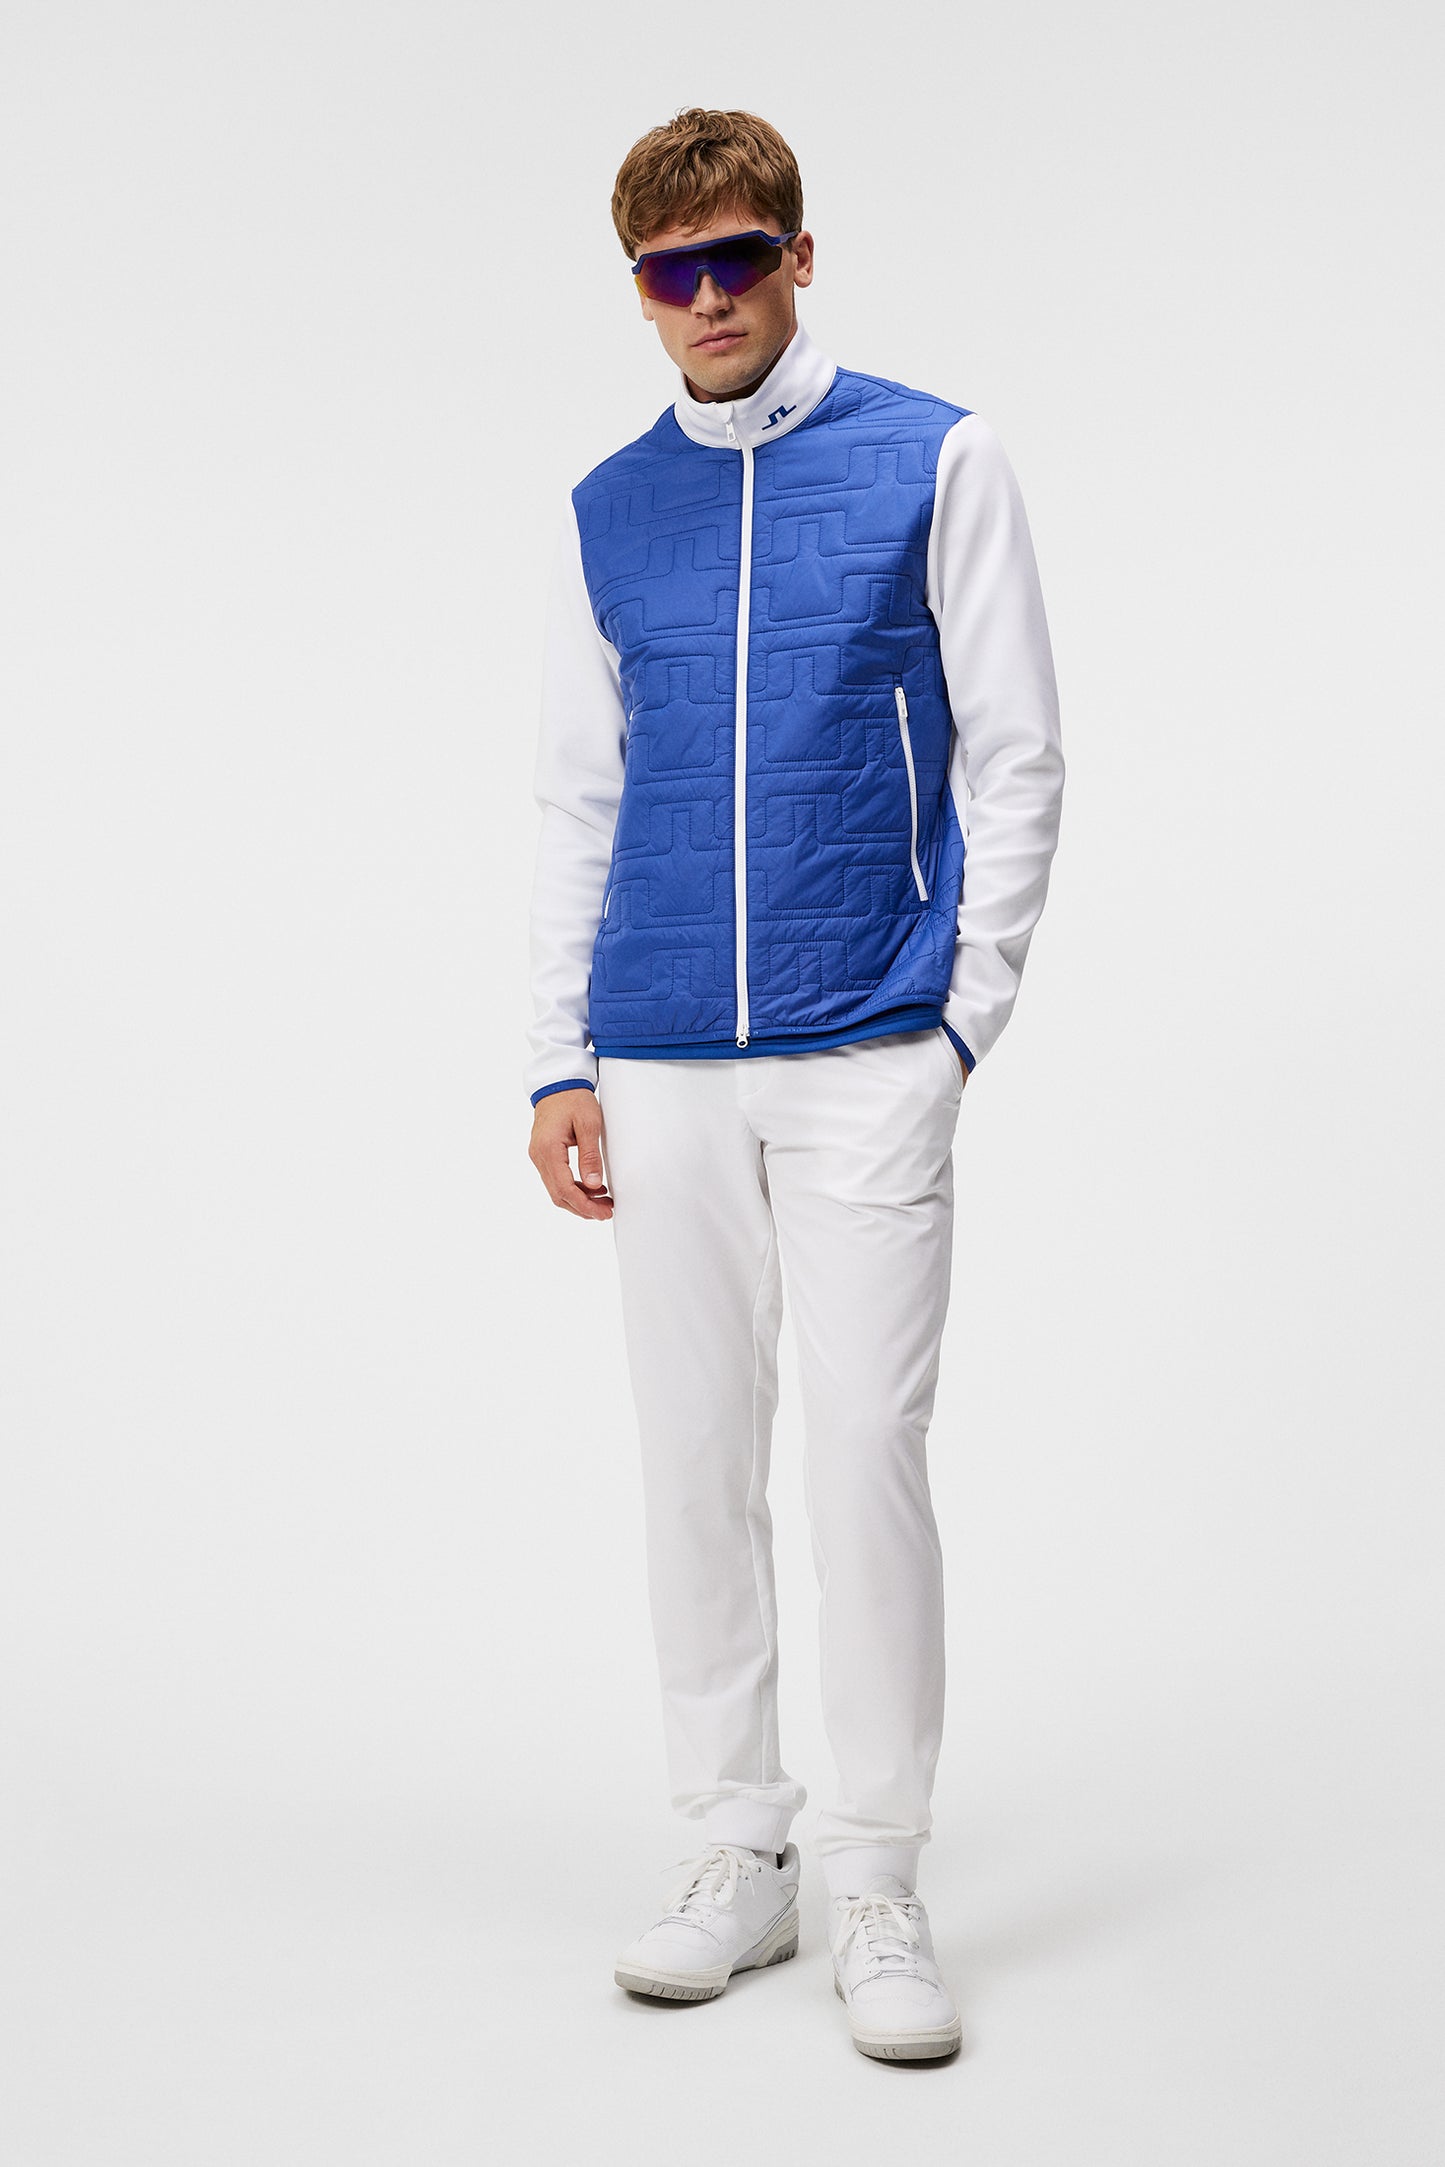 Stefano Hybrid Jacket / Sodalite Blue